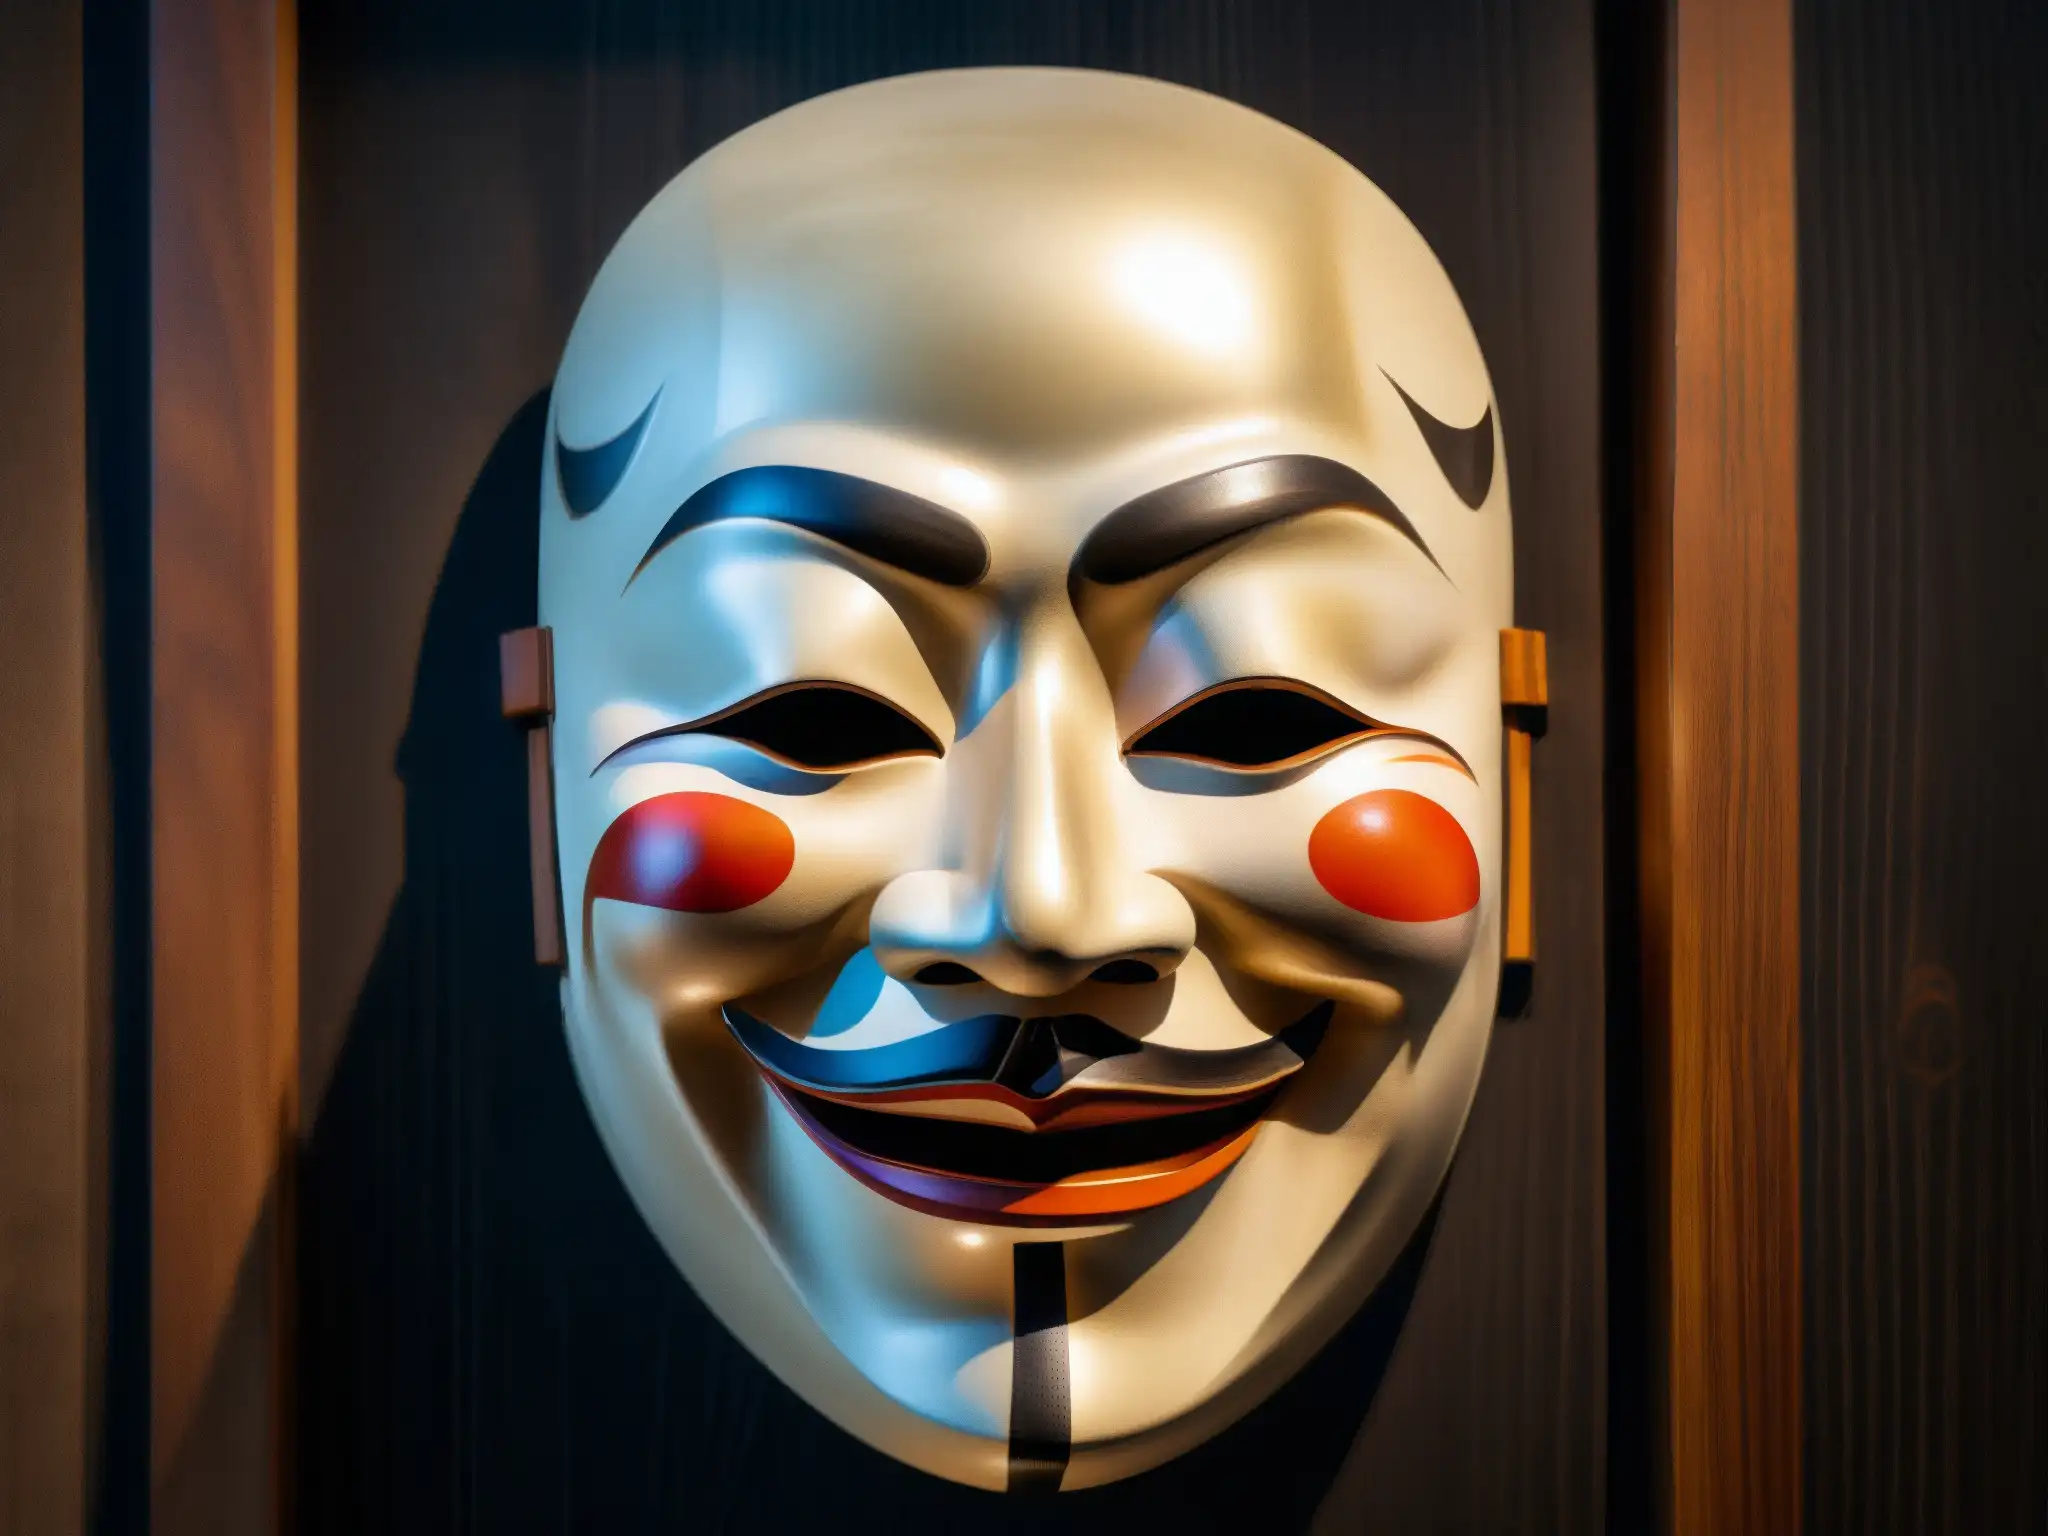 Detallada máscara Noh japonesa en 8k, con texturas de madera, juego de luces y sombras en un misterioso fondo oscuro